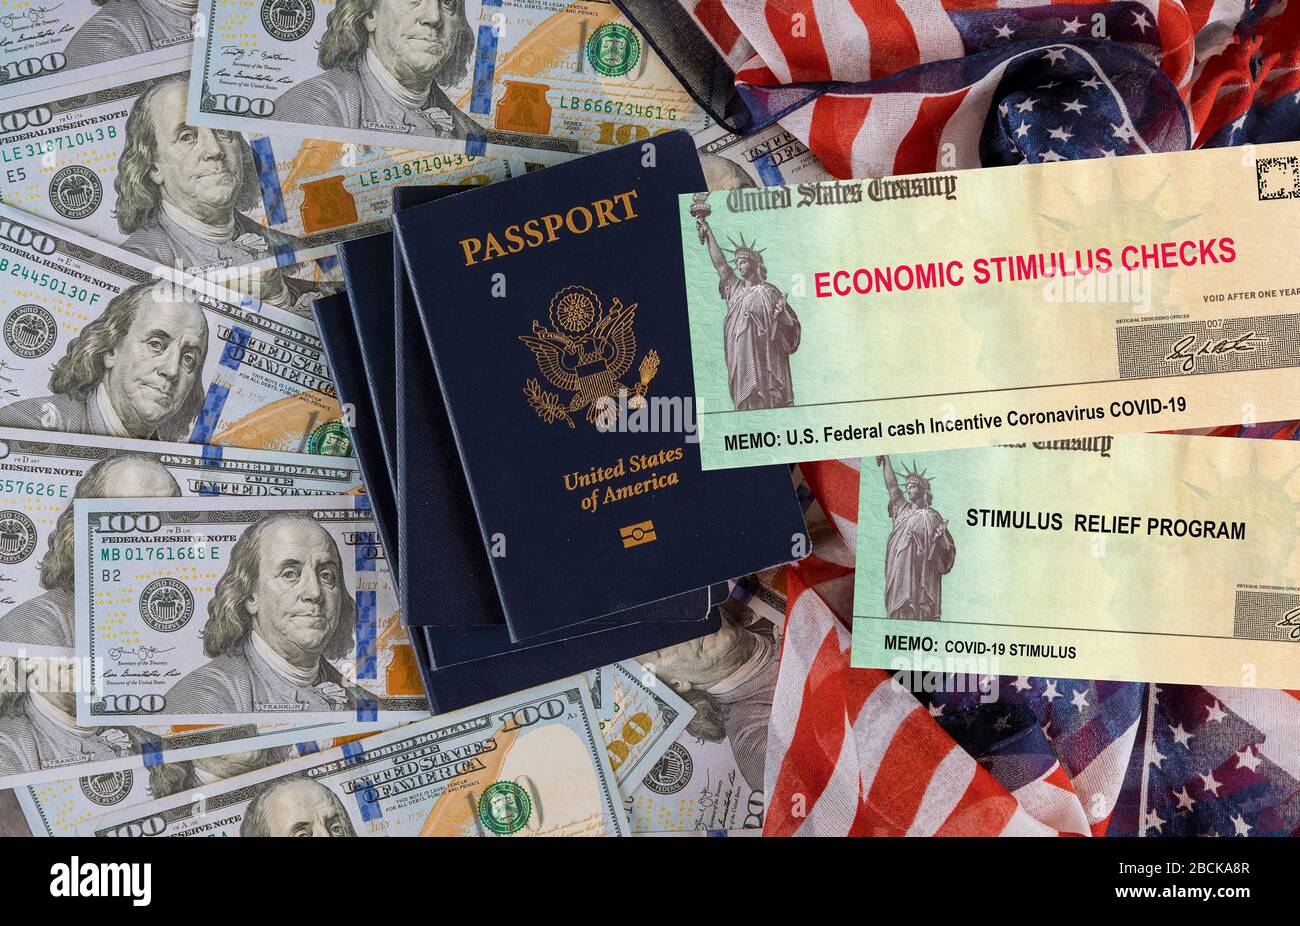 Banconota IN dollari AMERICANI sulla bandiera americana COVID-19 sulla pandemia globale blocco, pacchetto di stimoli finanziari governo per le persone Foto Stock